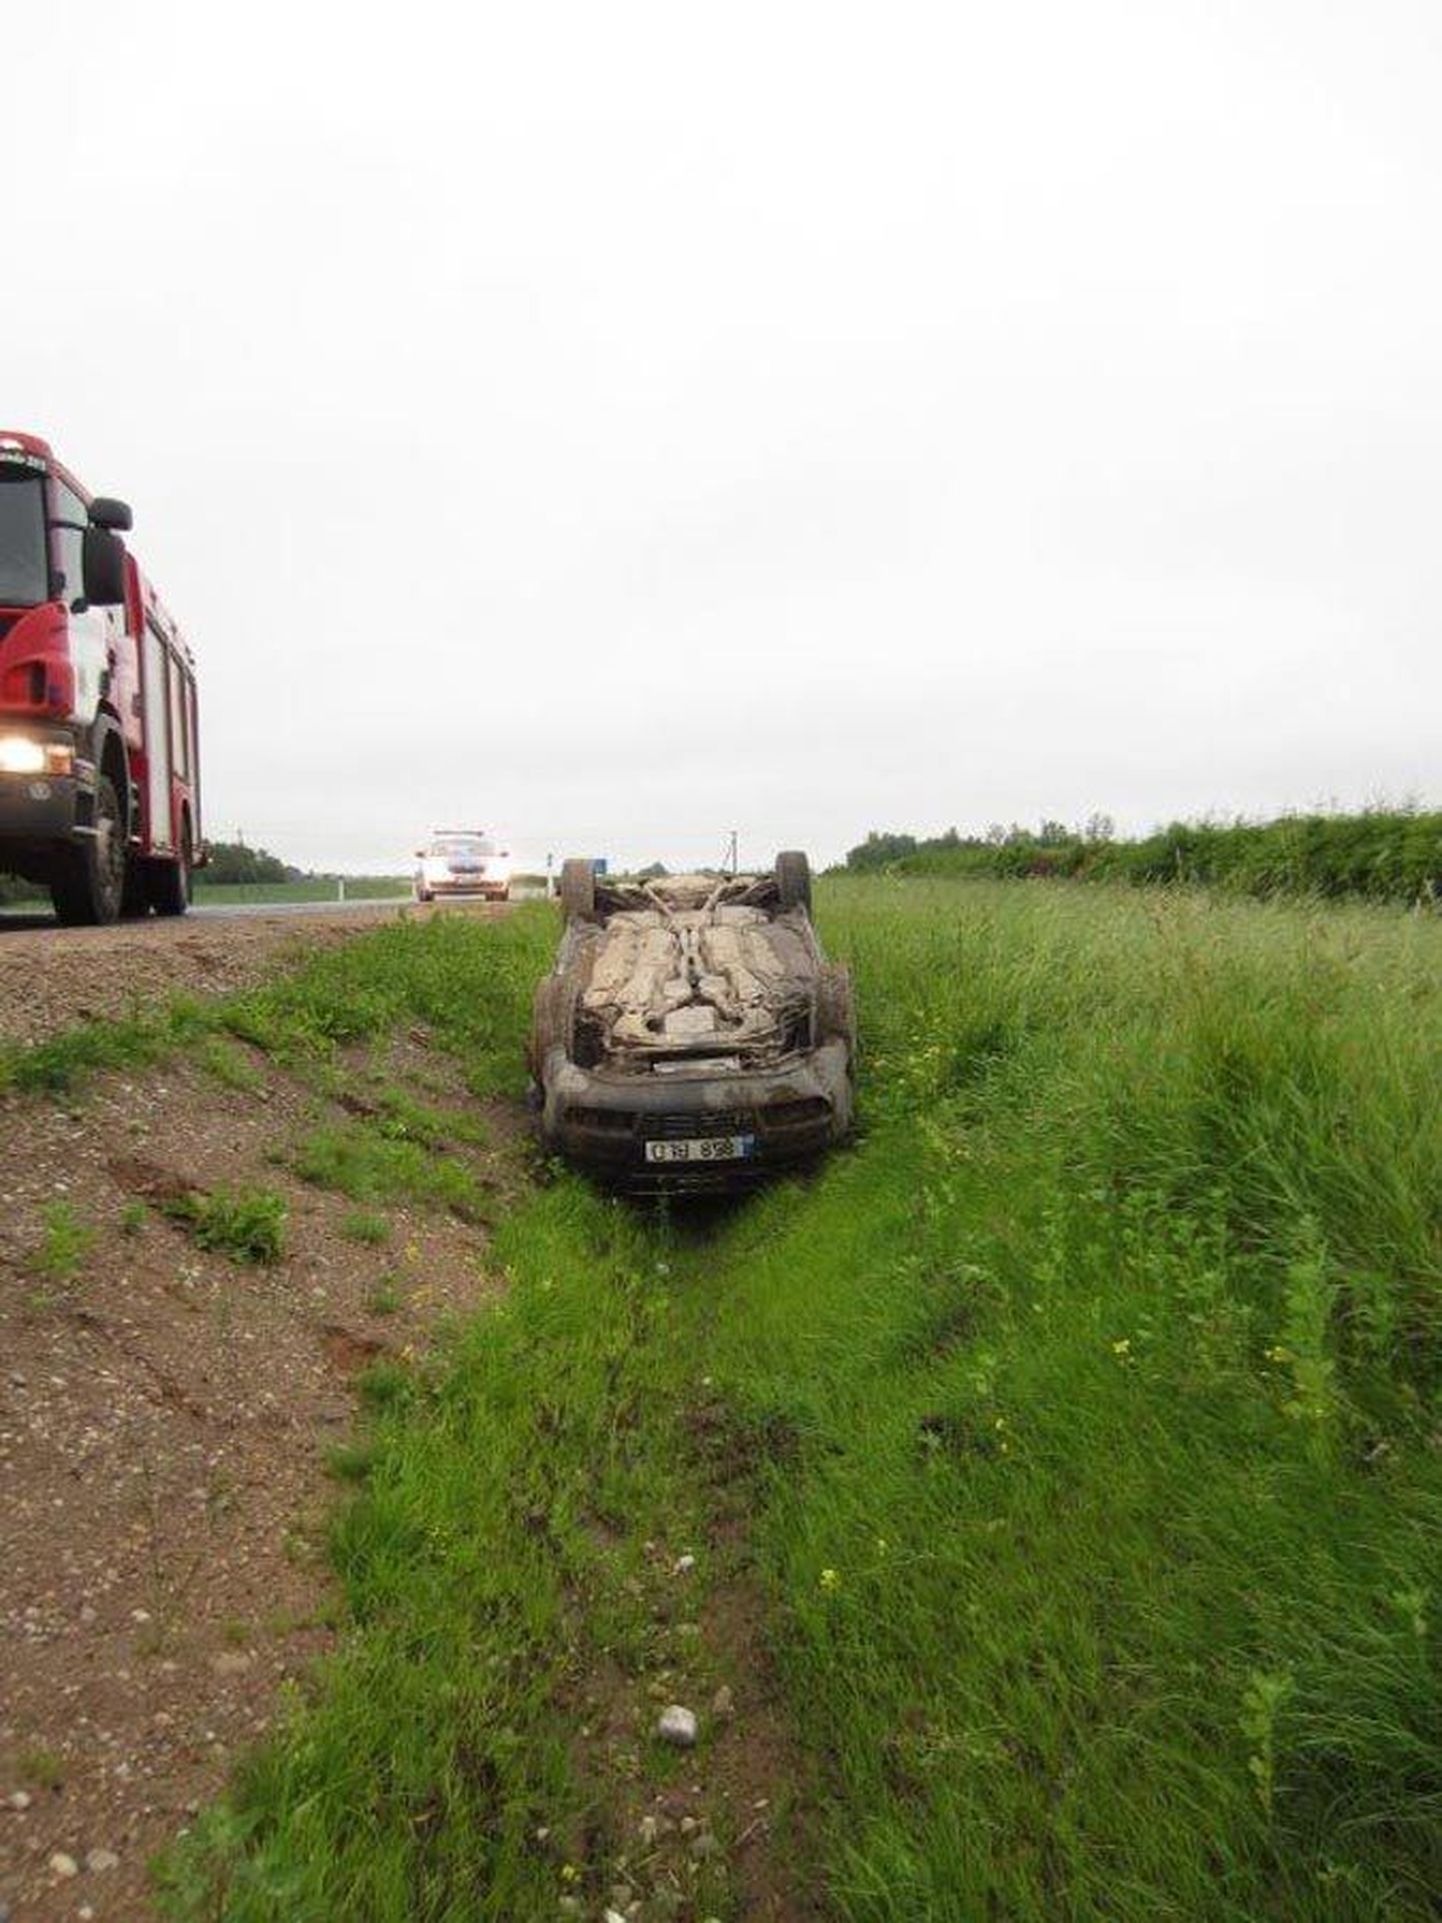 Audi A6 oli laupäeva hommikul Viljandi lähedal kraavis tagurpidi.